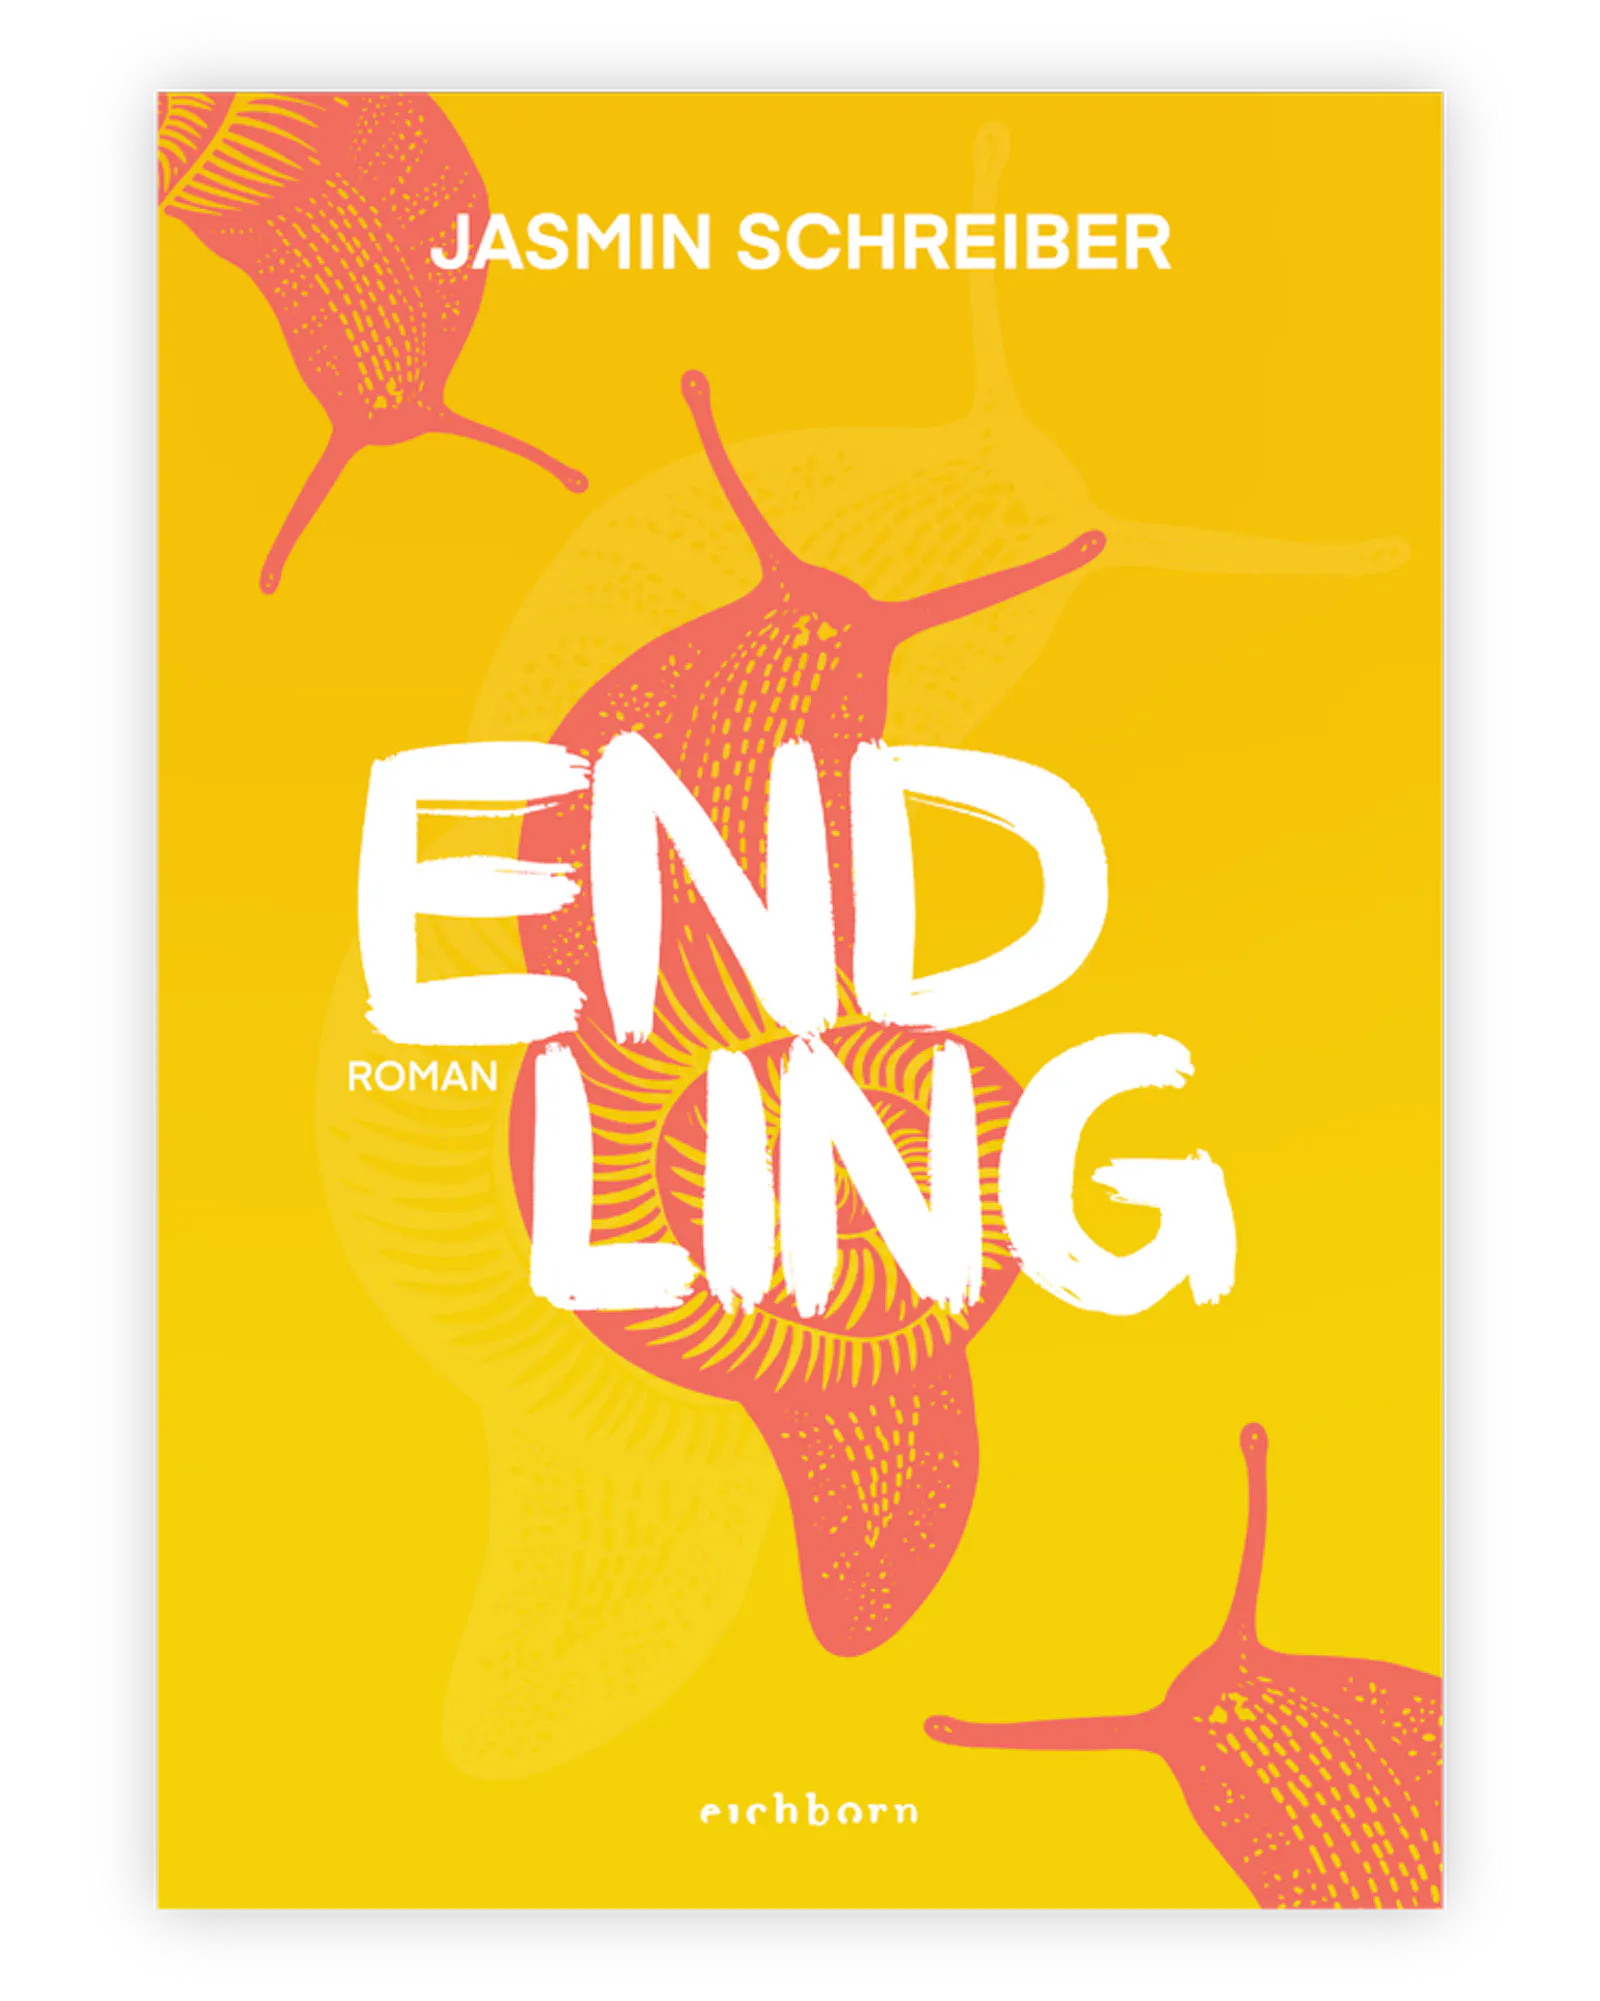 Cover Endling von Jasmin Schreiber
Gelber Hintergrund mit gezeichneten rötlichen Schnecken